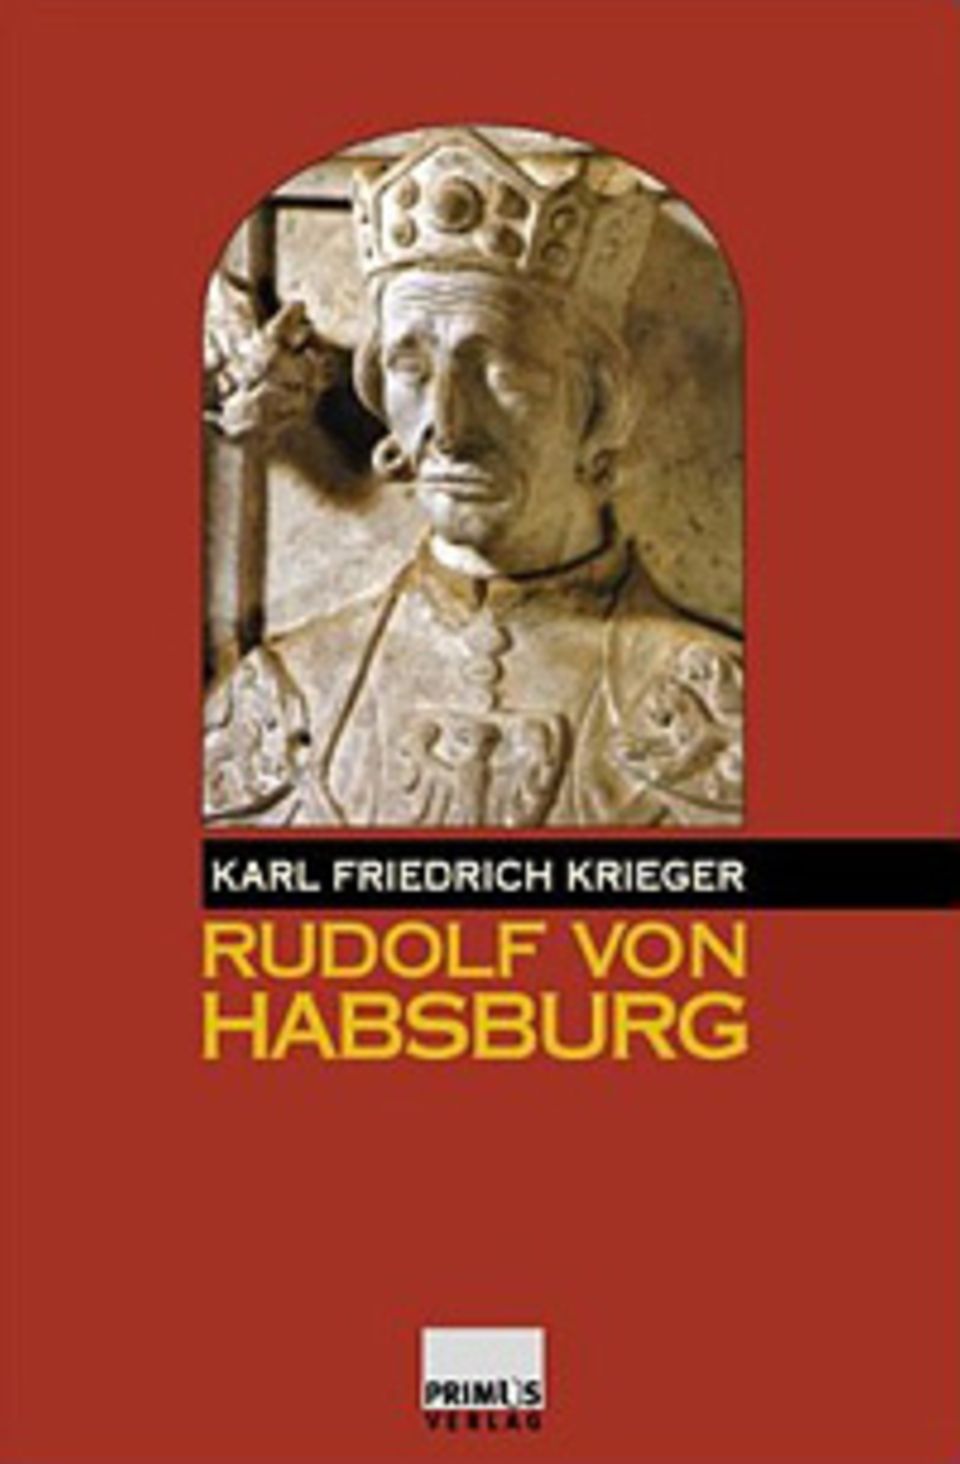 GEOEPOCHE-Buchtipps: Die Macht der Habsburger